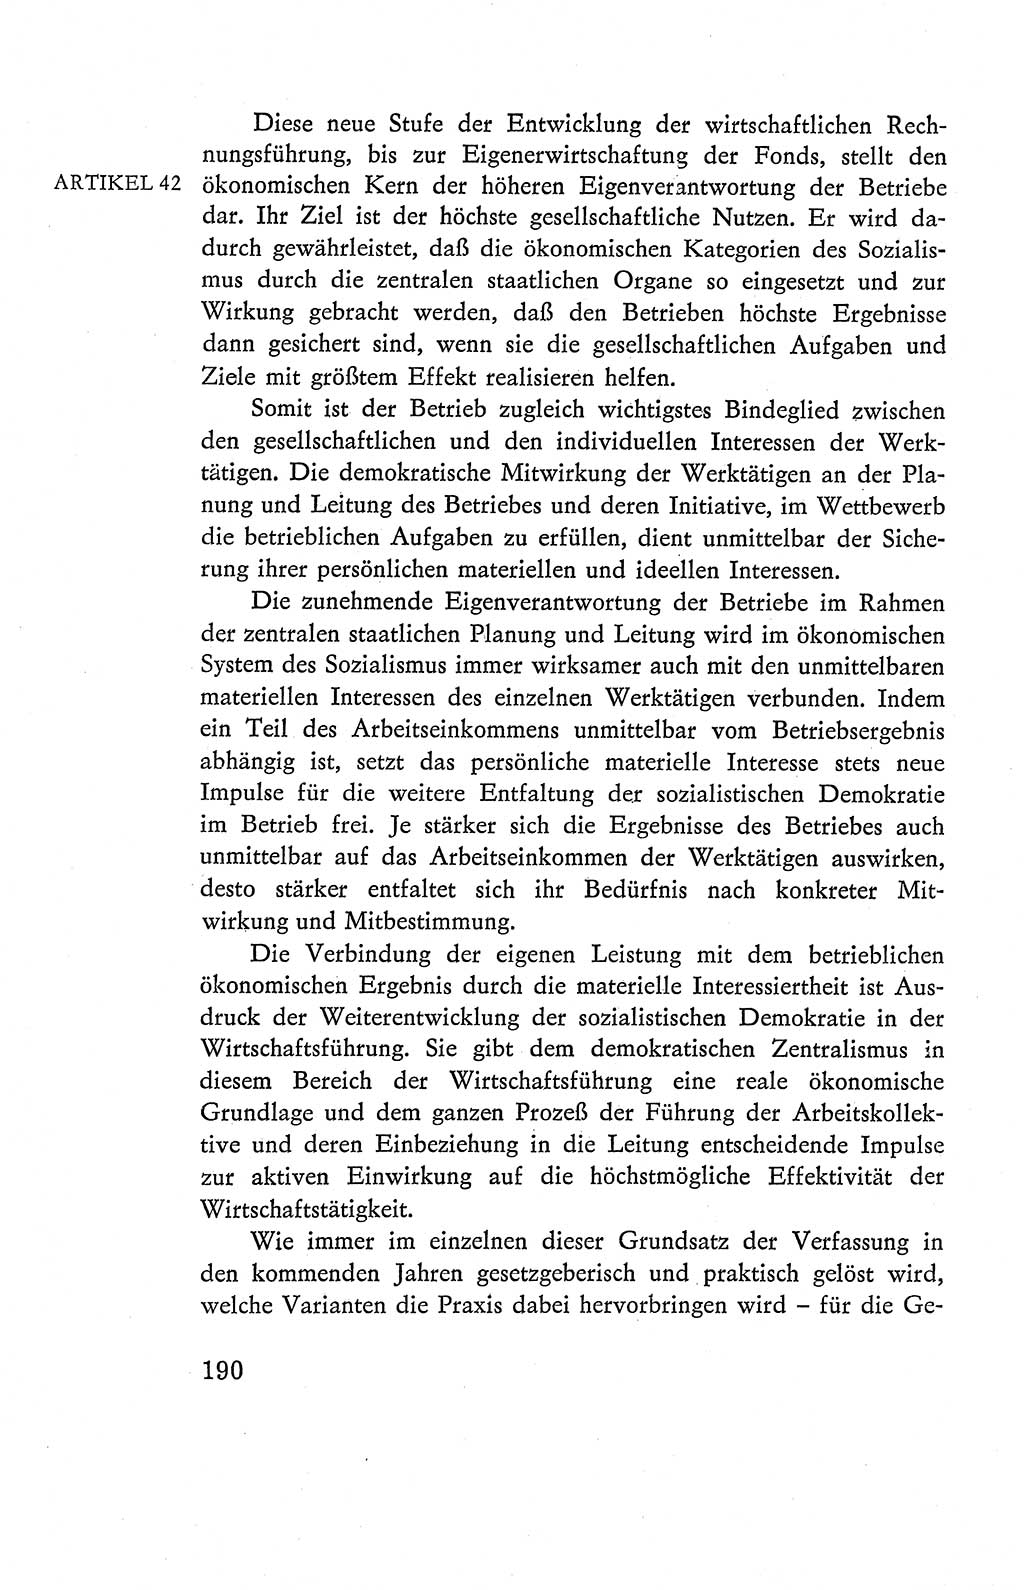 Verfassung der Deutschen Demokratischen Republik (DDR), Dokumente, Kommentar 1969, Band 2, Seite 190 (Verf. DDR Dok. Komm. 1969, Bd. 2, S. 190)